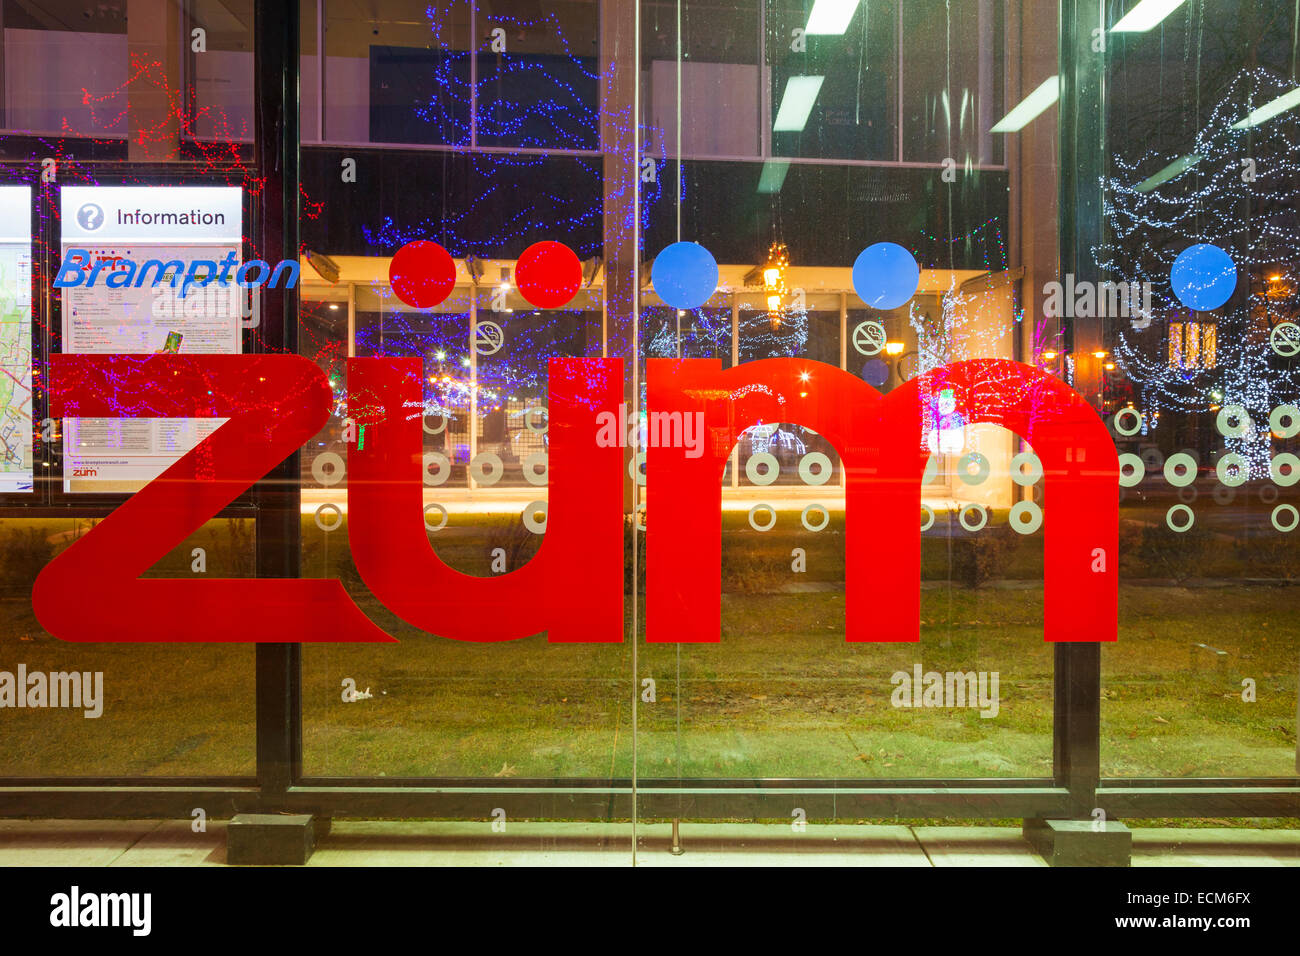 Il Züm rapid transit logo con le luci del Natale si riflette nel vetro. Downtown Brampton, Ontario, Canada. Foto Stock